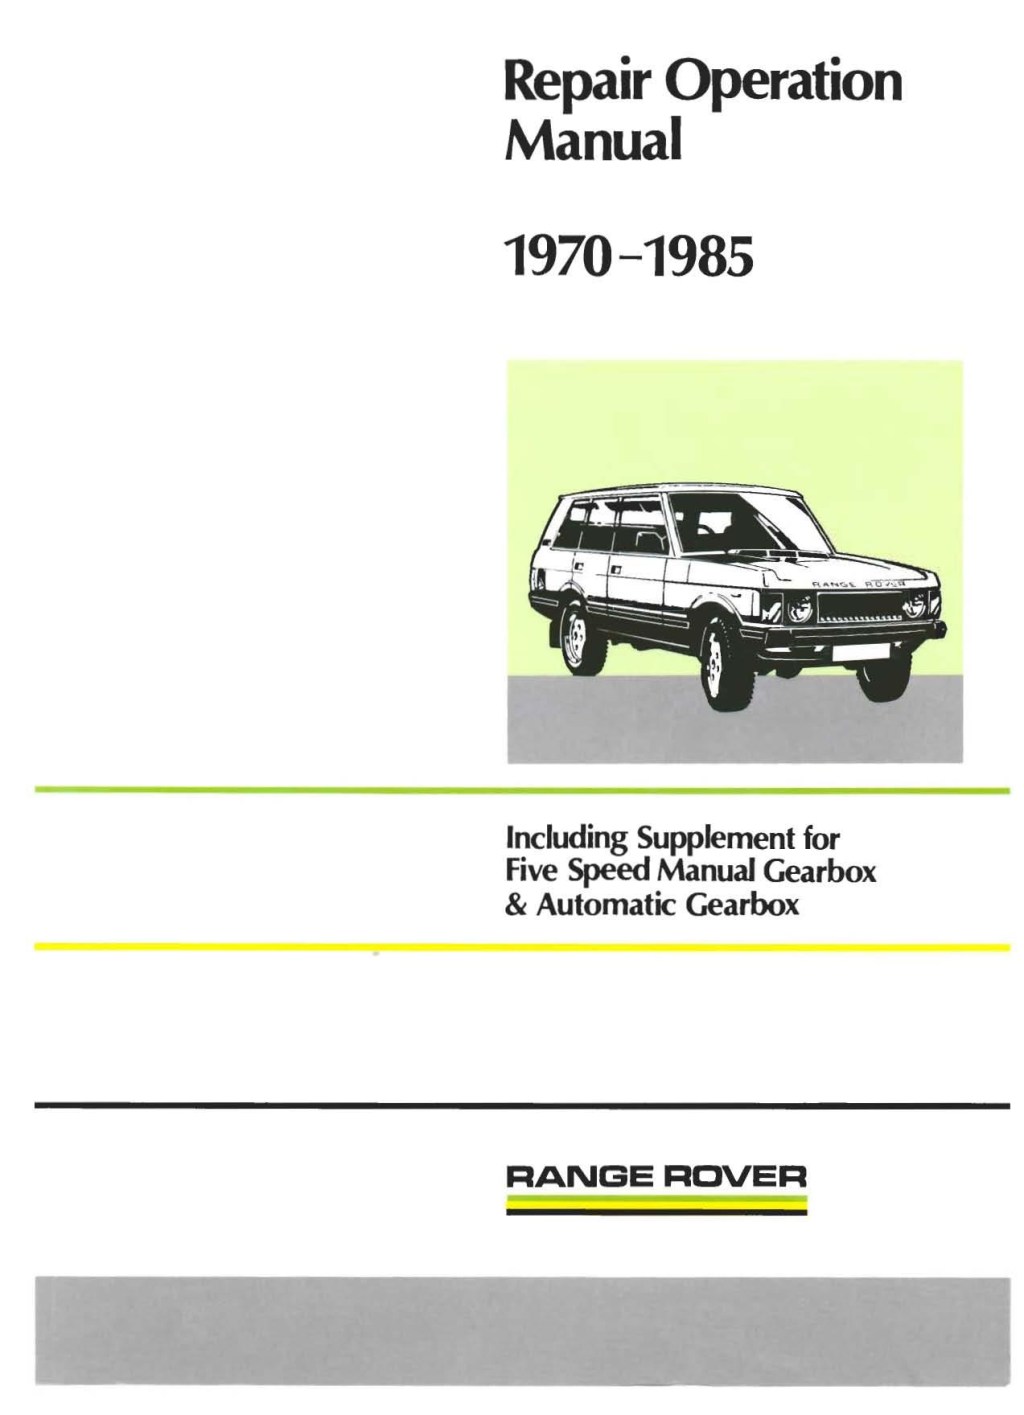 Picture of: Range Rover Service Repair Manual by kmdwisbnvmk – Issuu